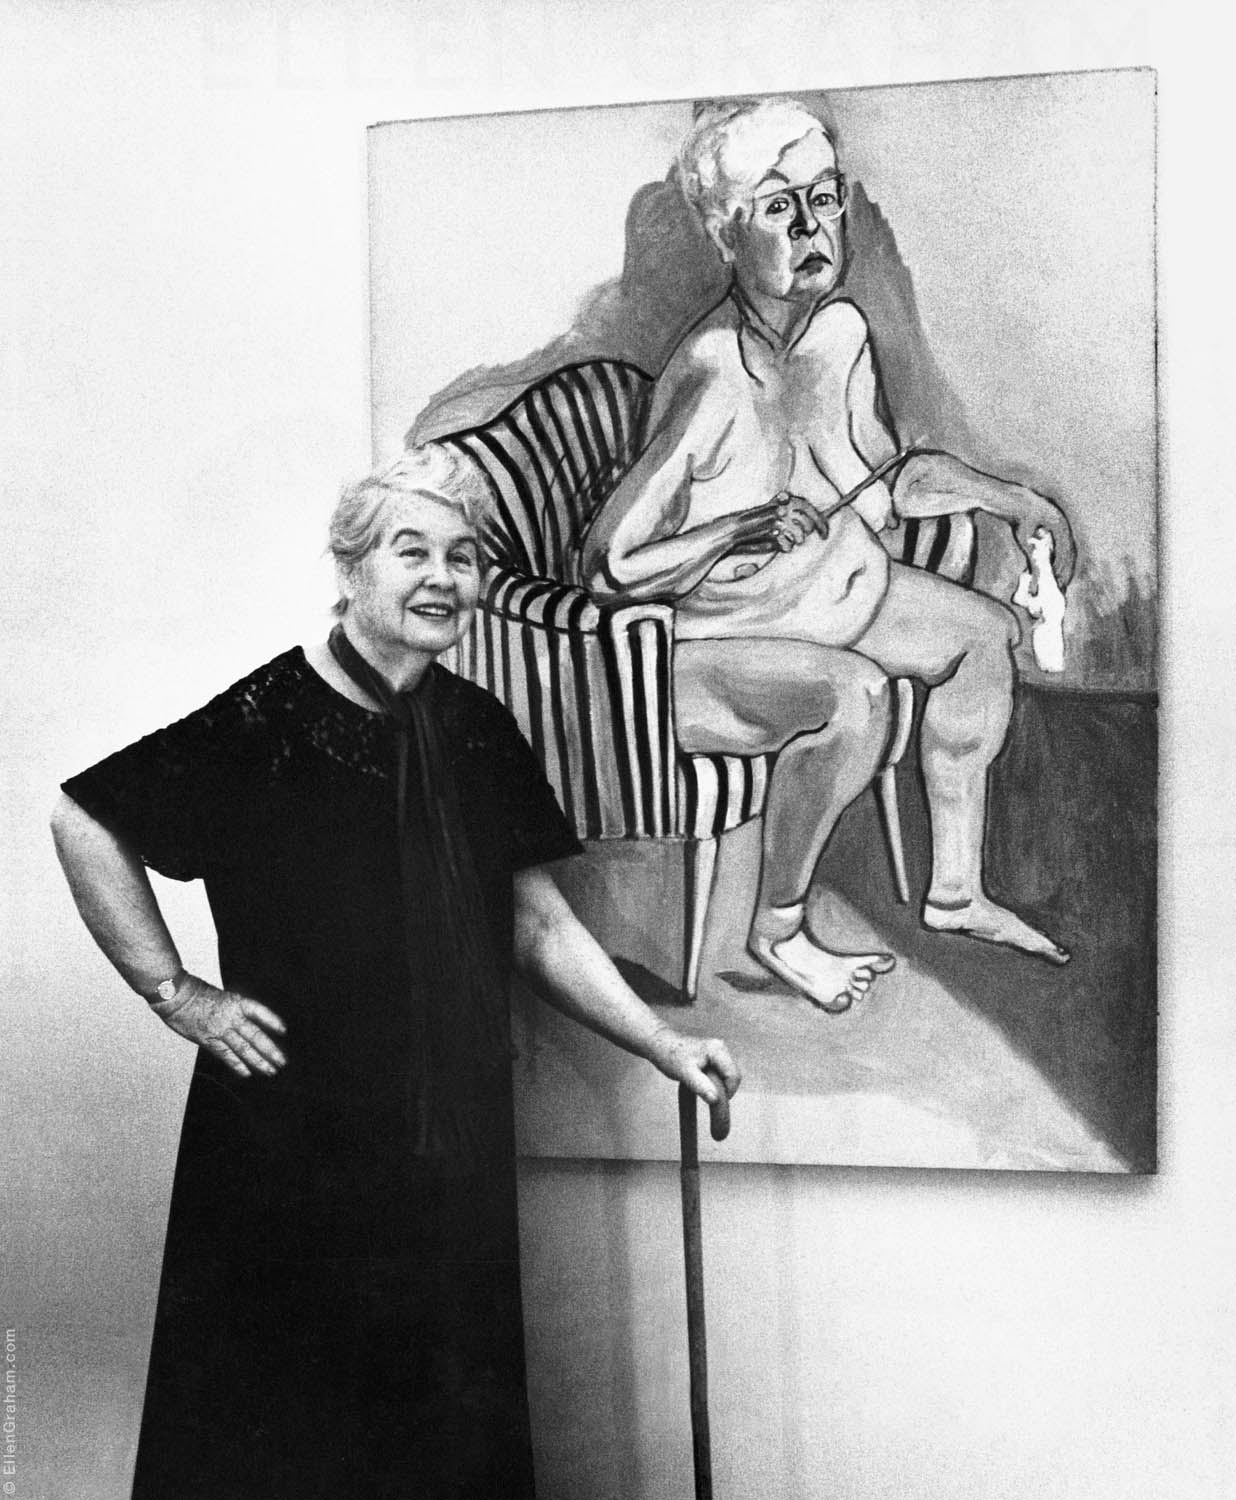 Alice Neel With Self Portrait, New York, NY, 1981